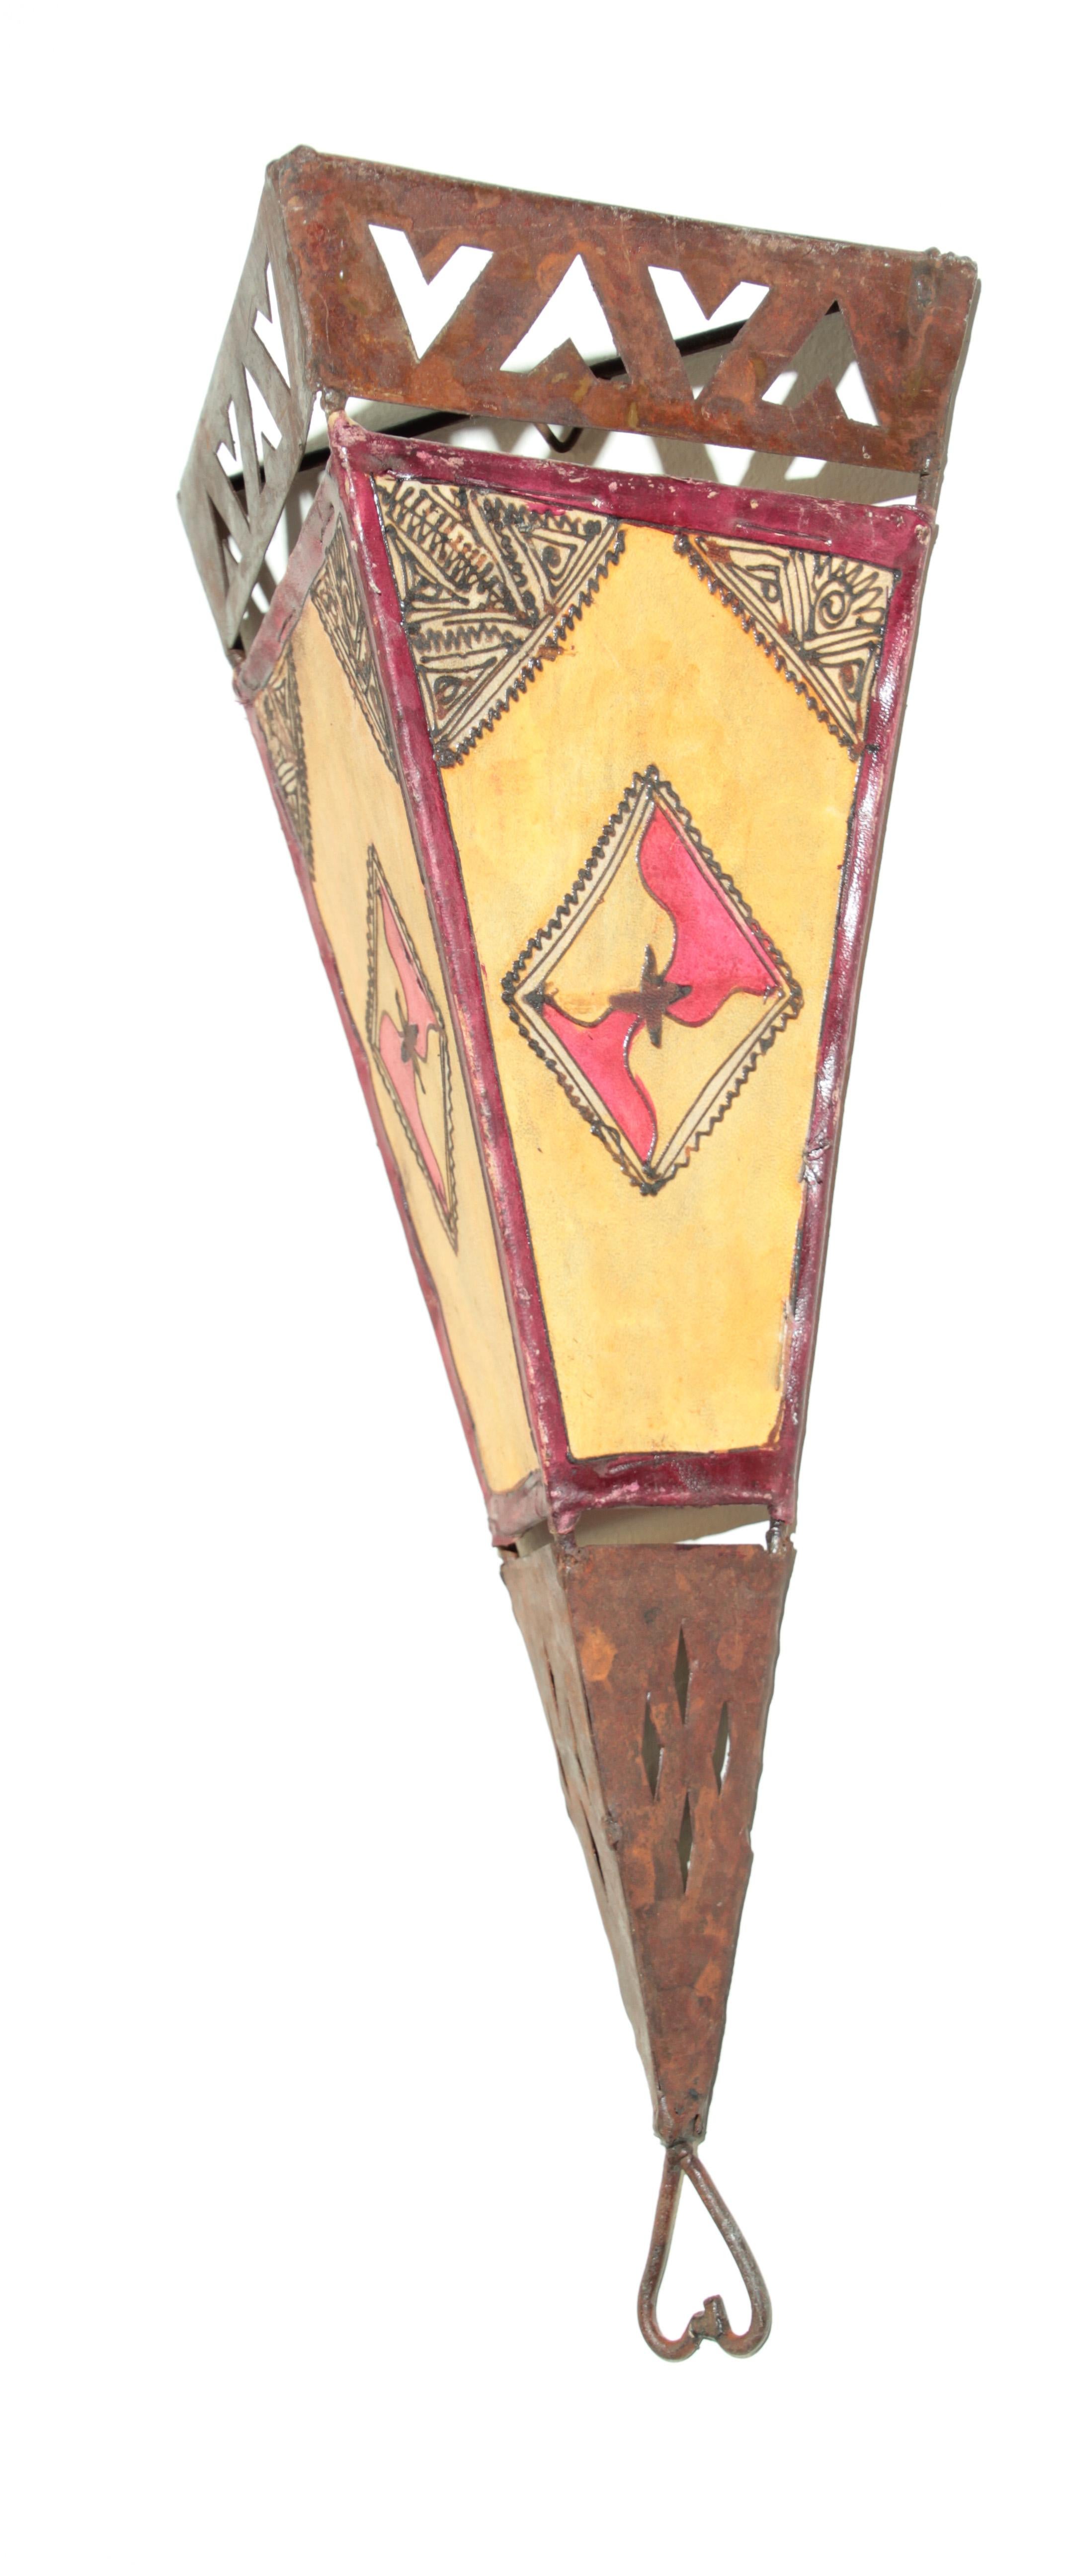 Großer afrikanischer Stammeskunst Pergament Wandleuchte mit einer großen dreieckigen Form A auf Eisen genäht und handbemalt Oberfläche.
Diese ethnischen Kunstwerke können als Wandlampenschirm oder dekorativer Wandbehang verwendet werden.
Große